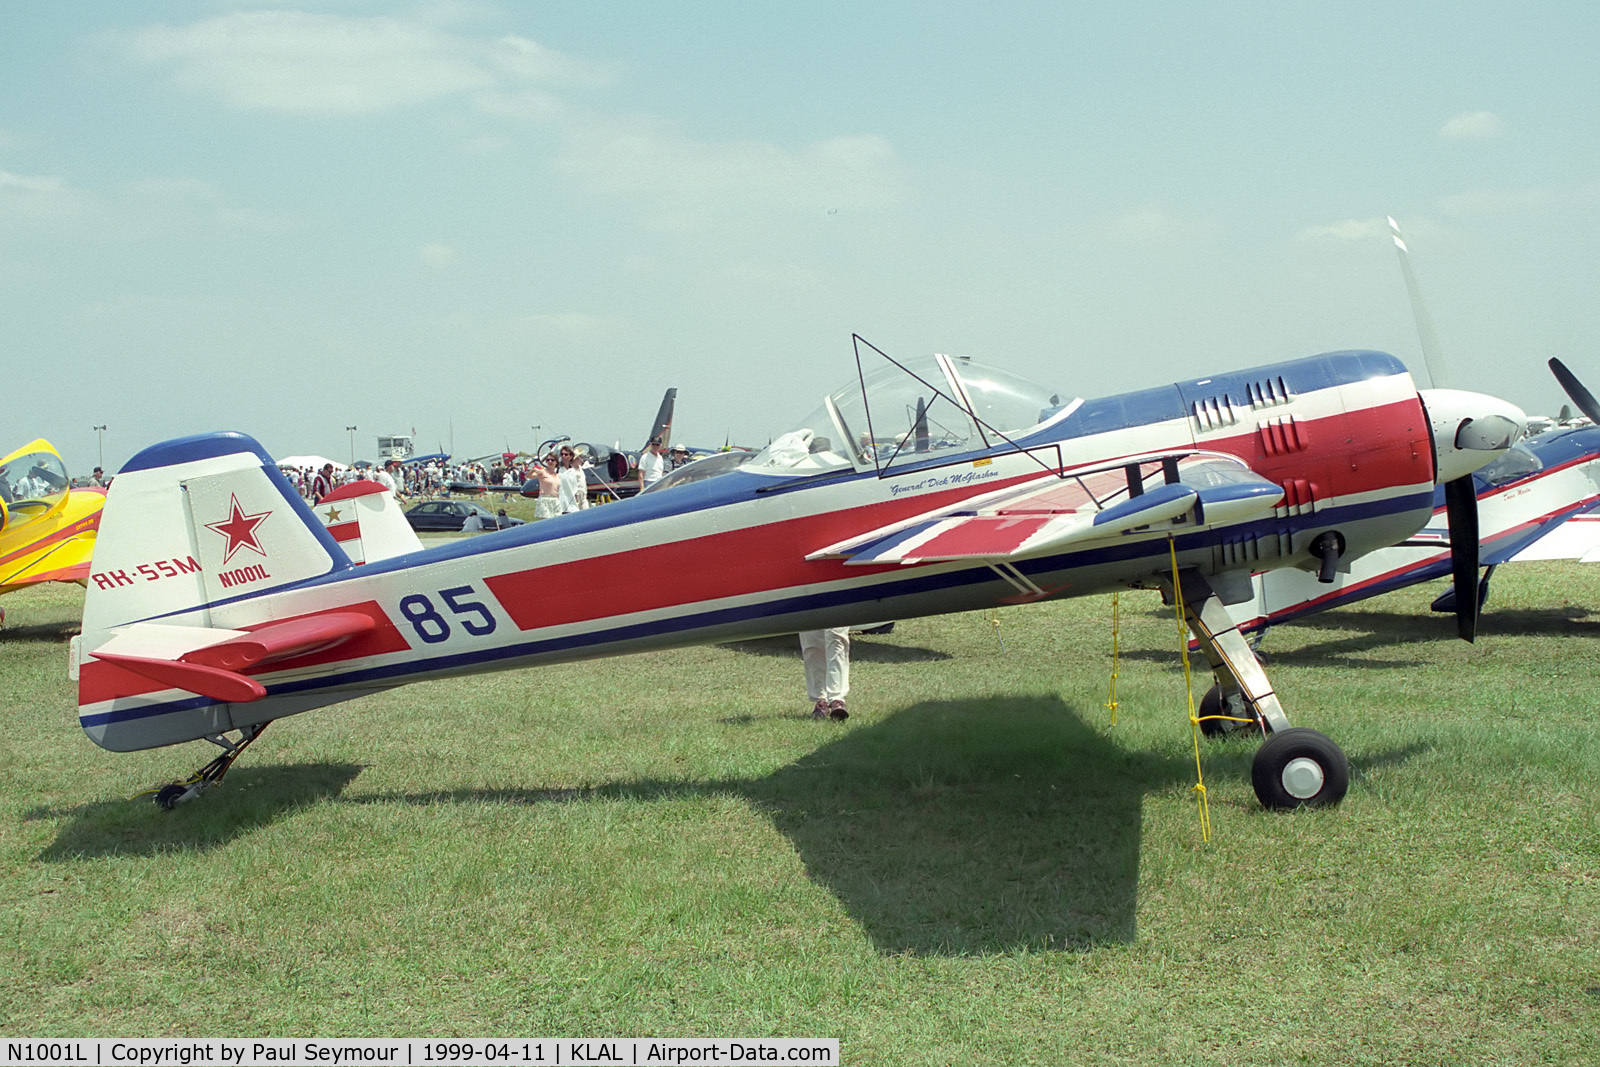 N1001L, 1996 Yakovlev Yak-55M C/N 1001, At Lakeland for the Sun n Fun airshow.